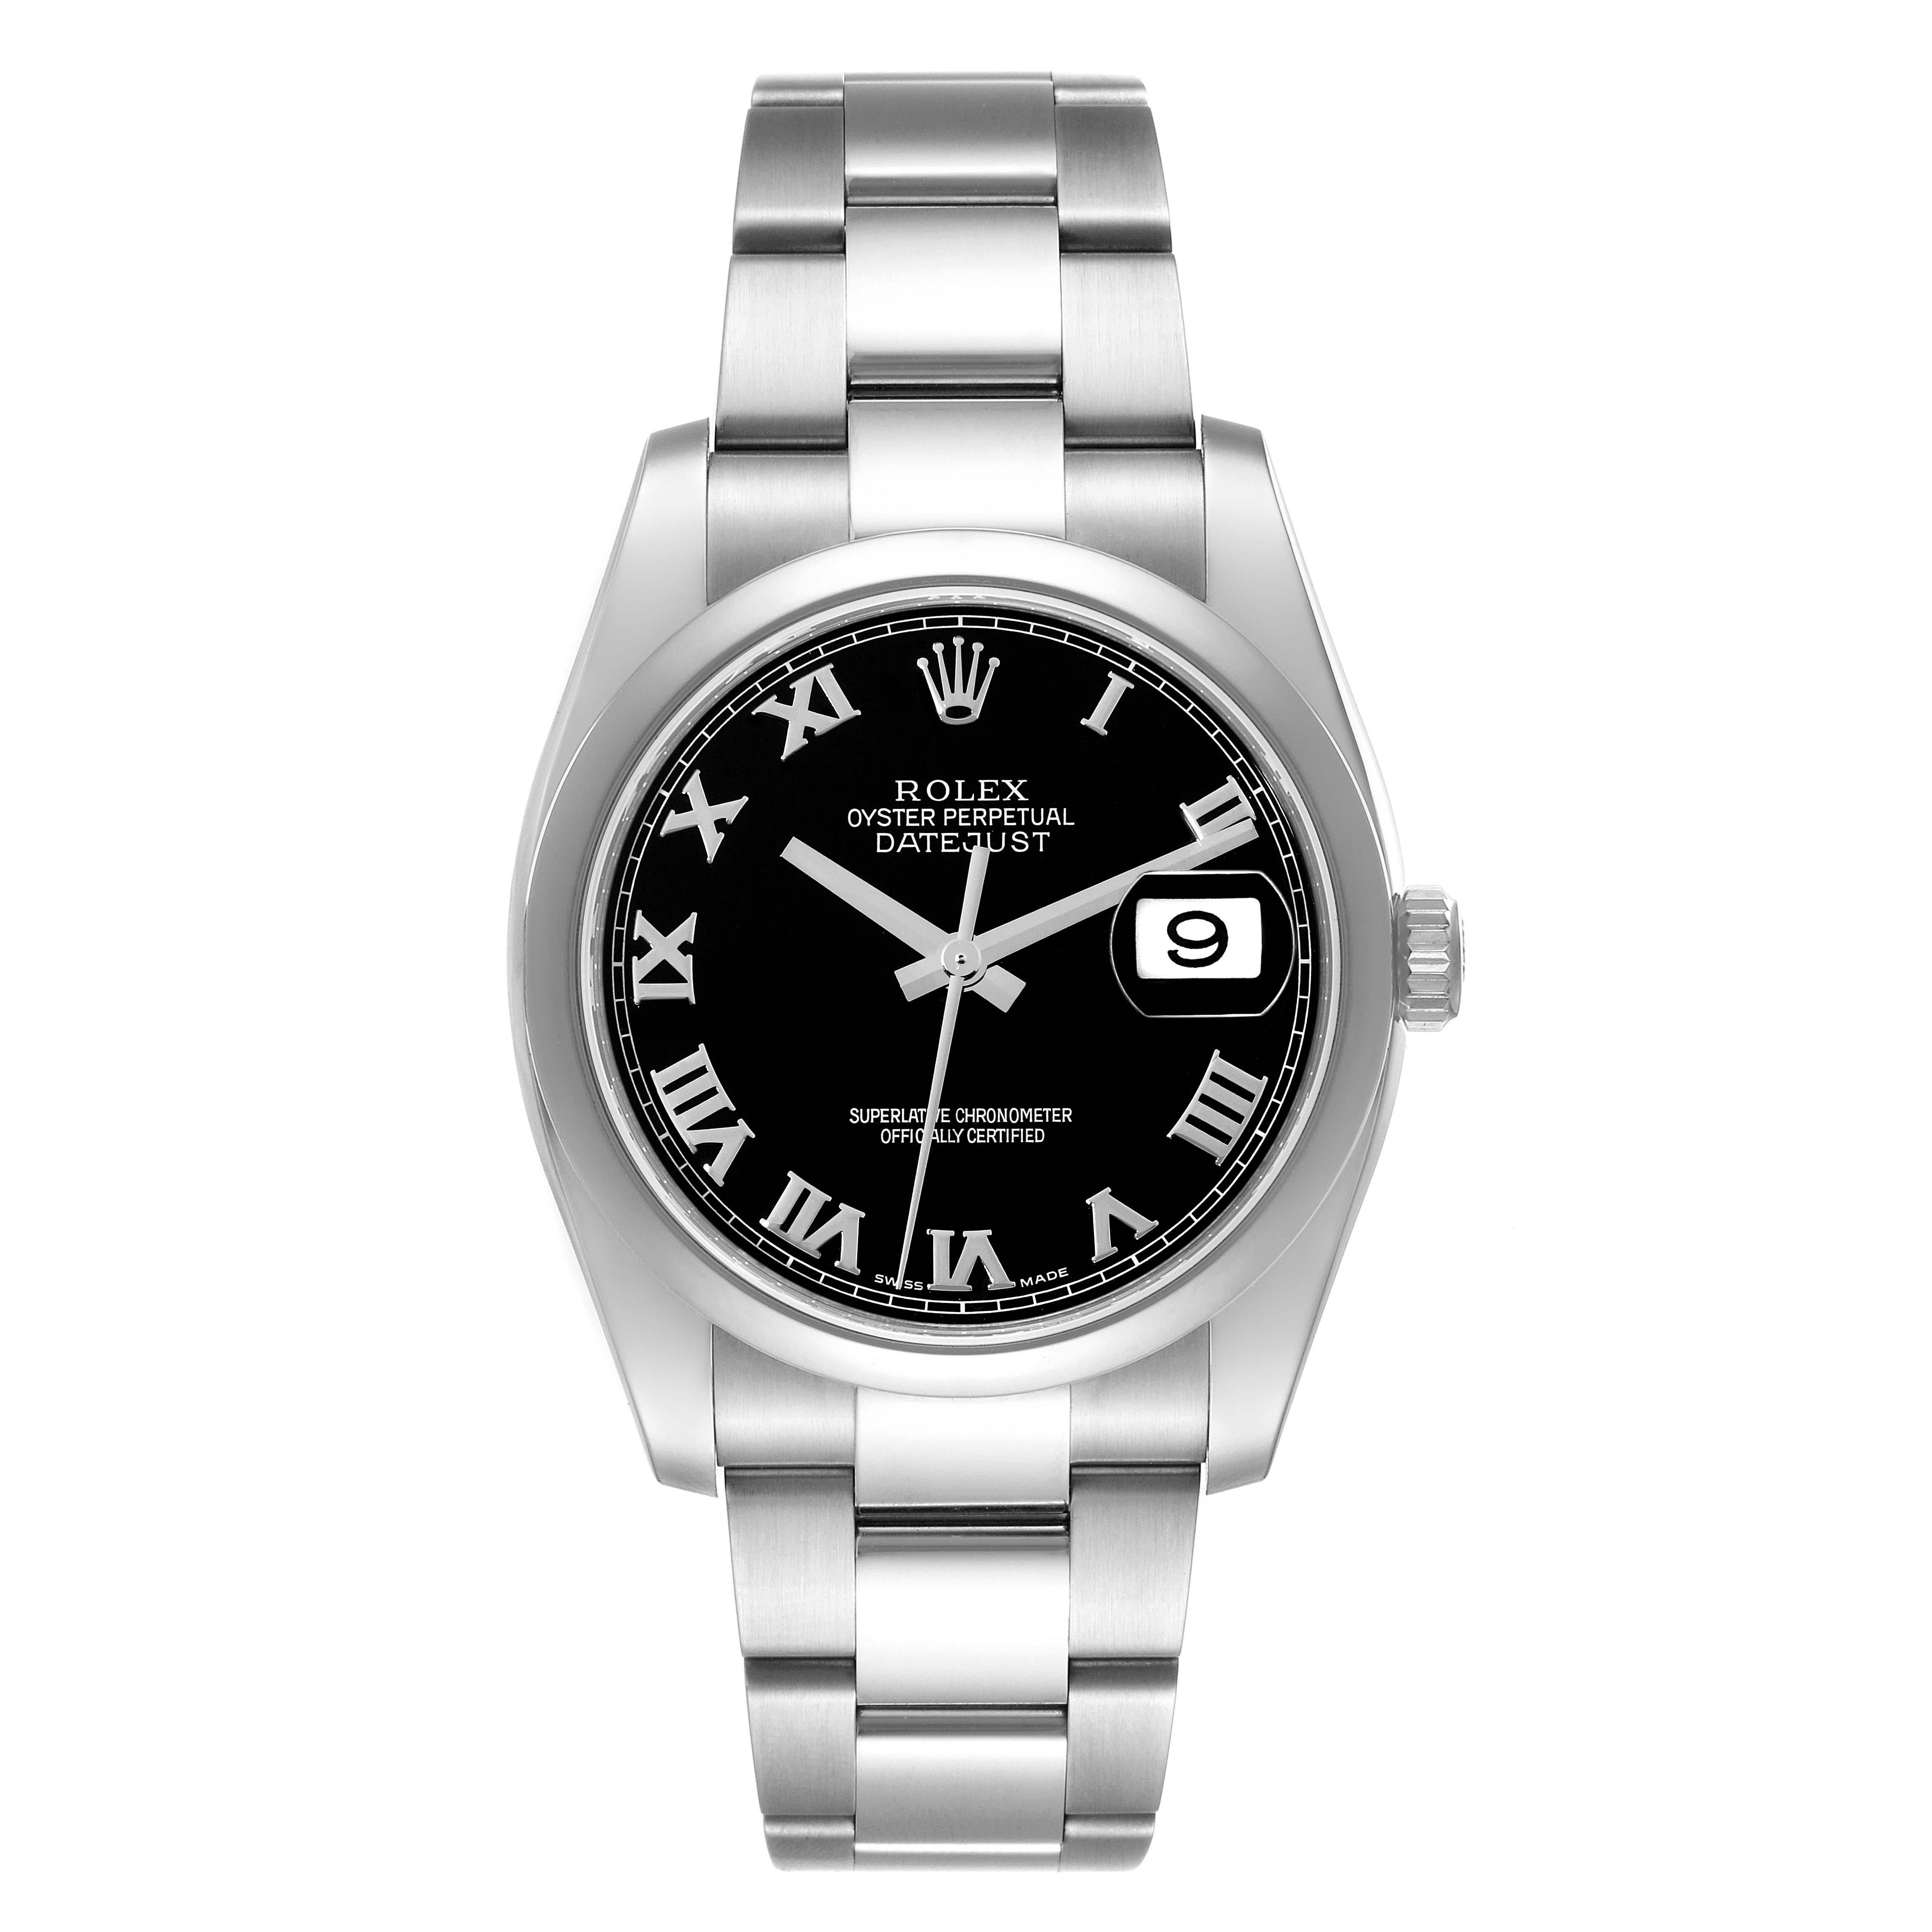 Rolex Datejust Black Roman Dial Steel Mens Watch 116200 Box Card. Mouvement automatique à remontage automatique, certifié officiellement chronomètre, avec date à réglage rapide. Boîtier en acier inoxydable de 36.0 mm de diamètre. Cosses hautement